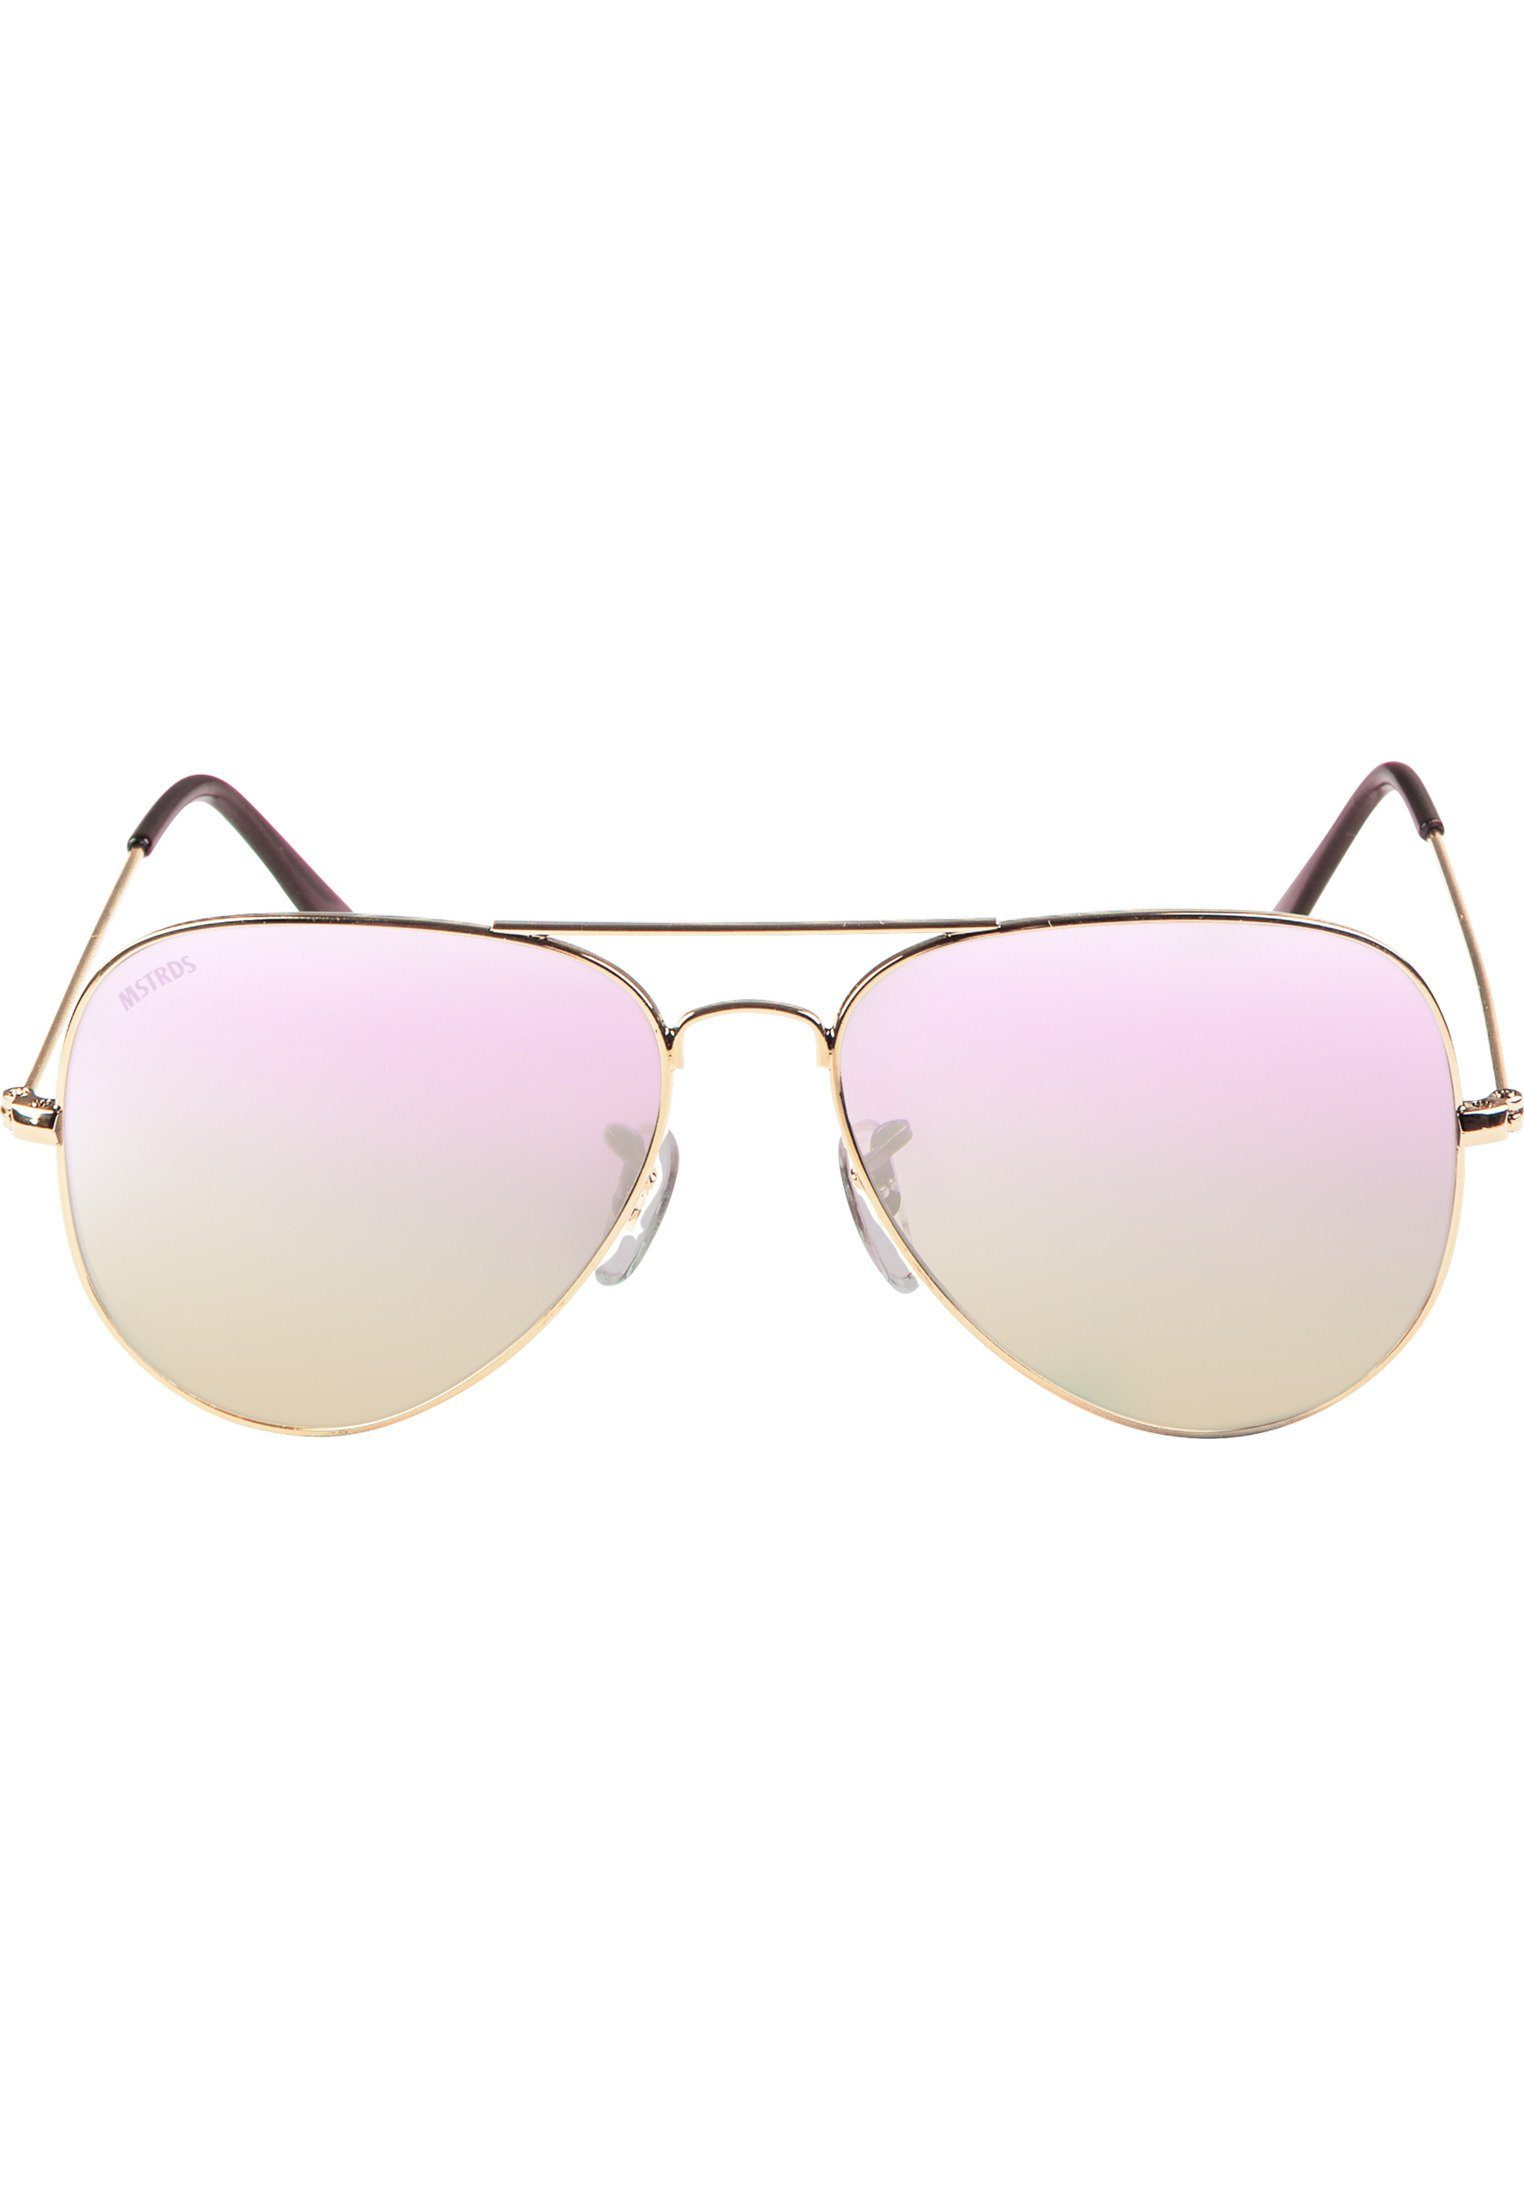 MSTRDS Sonnenbrille Accessoires Sunglasses PureAv Youth gold/rosé